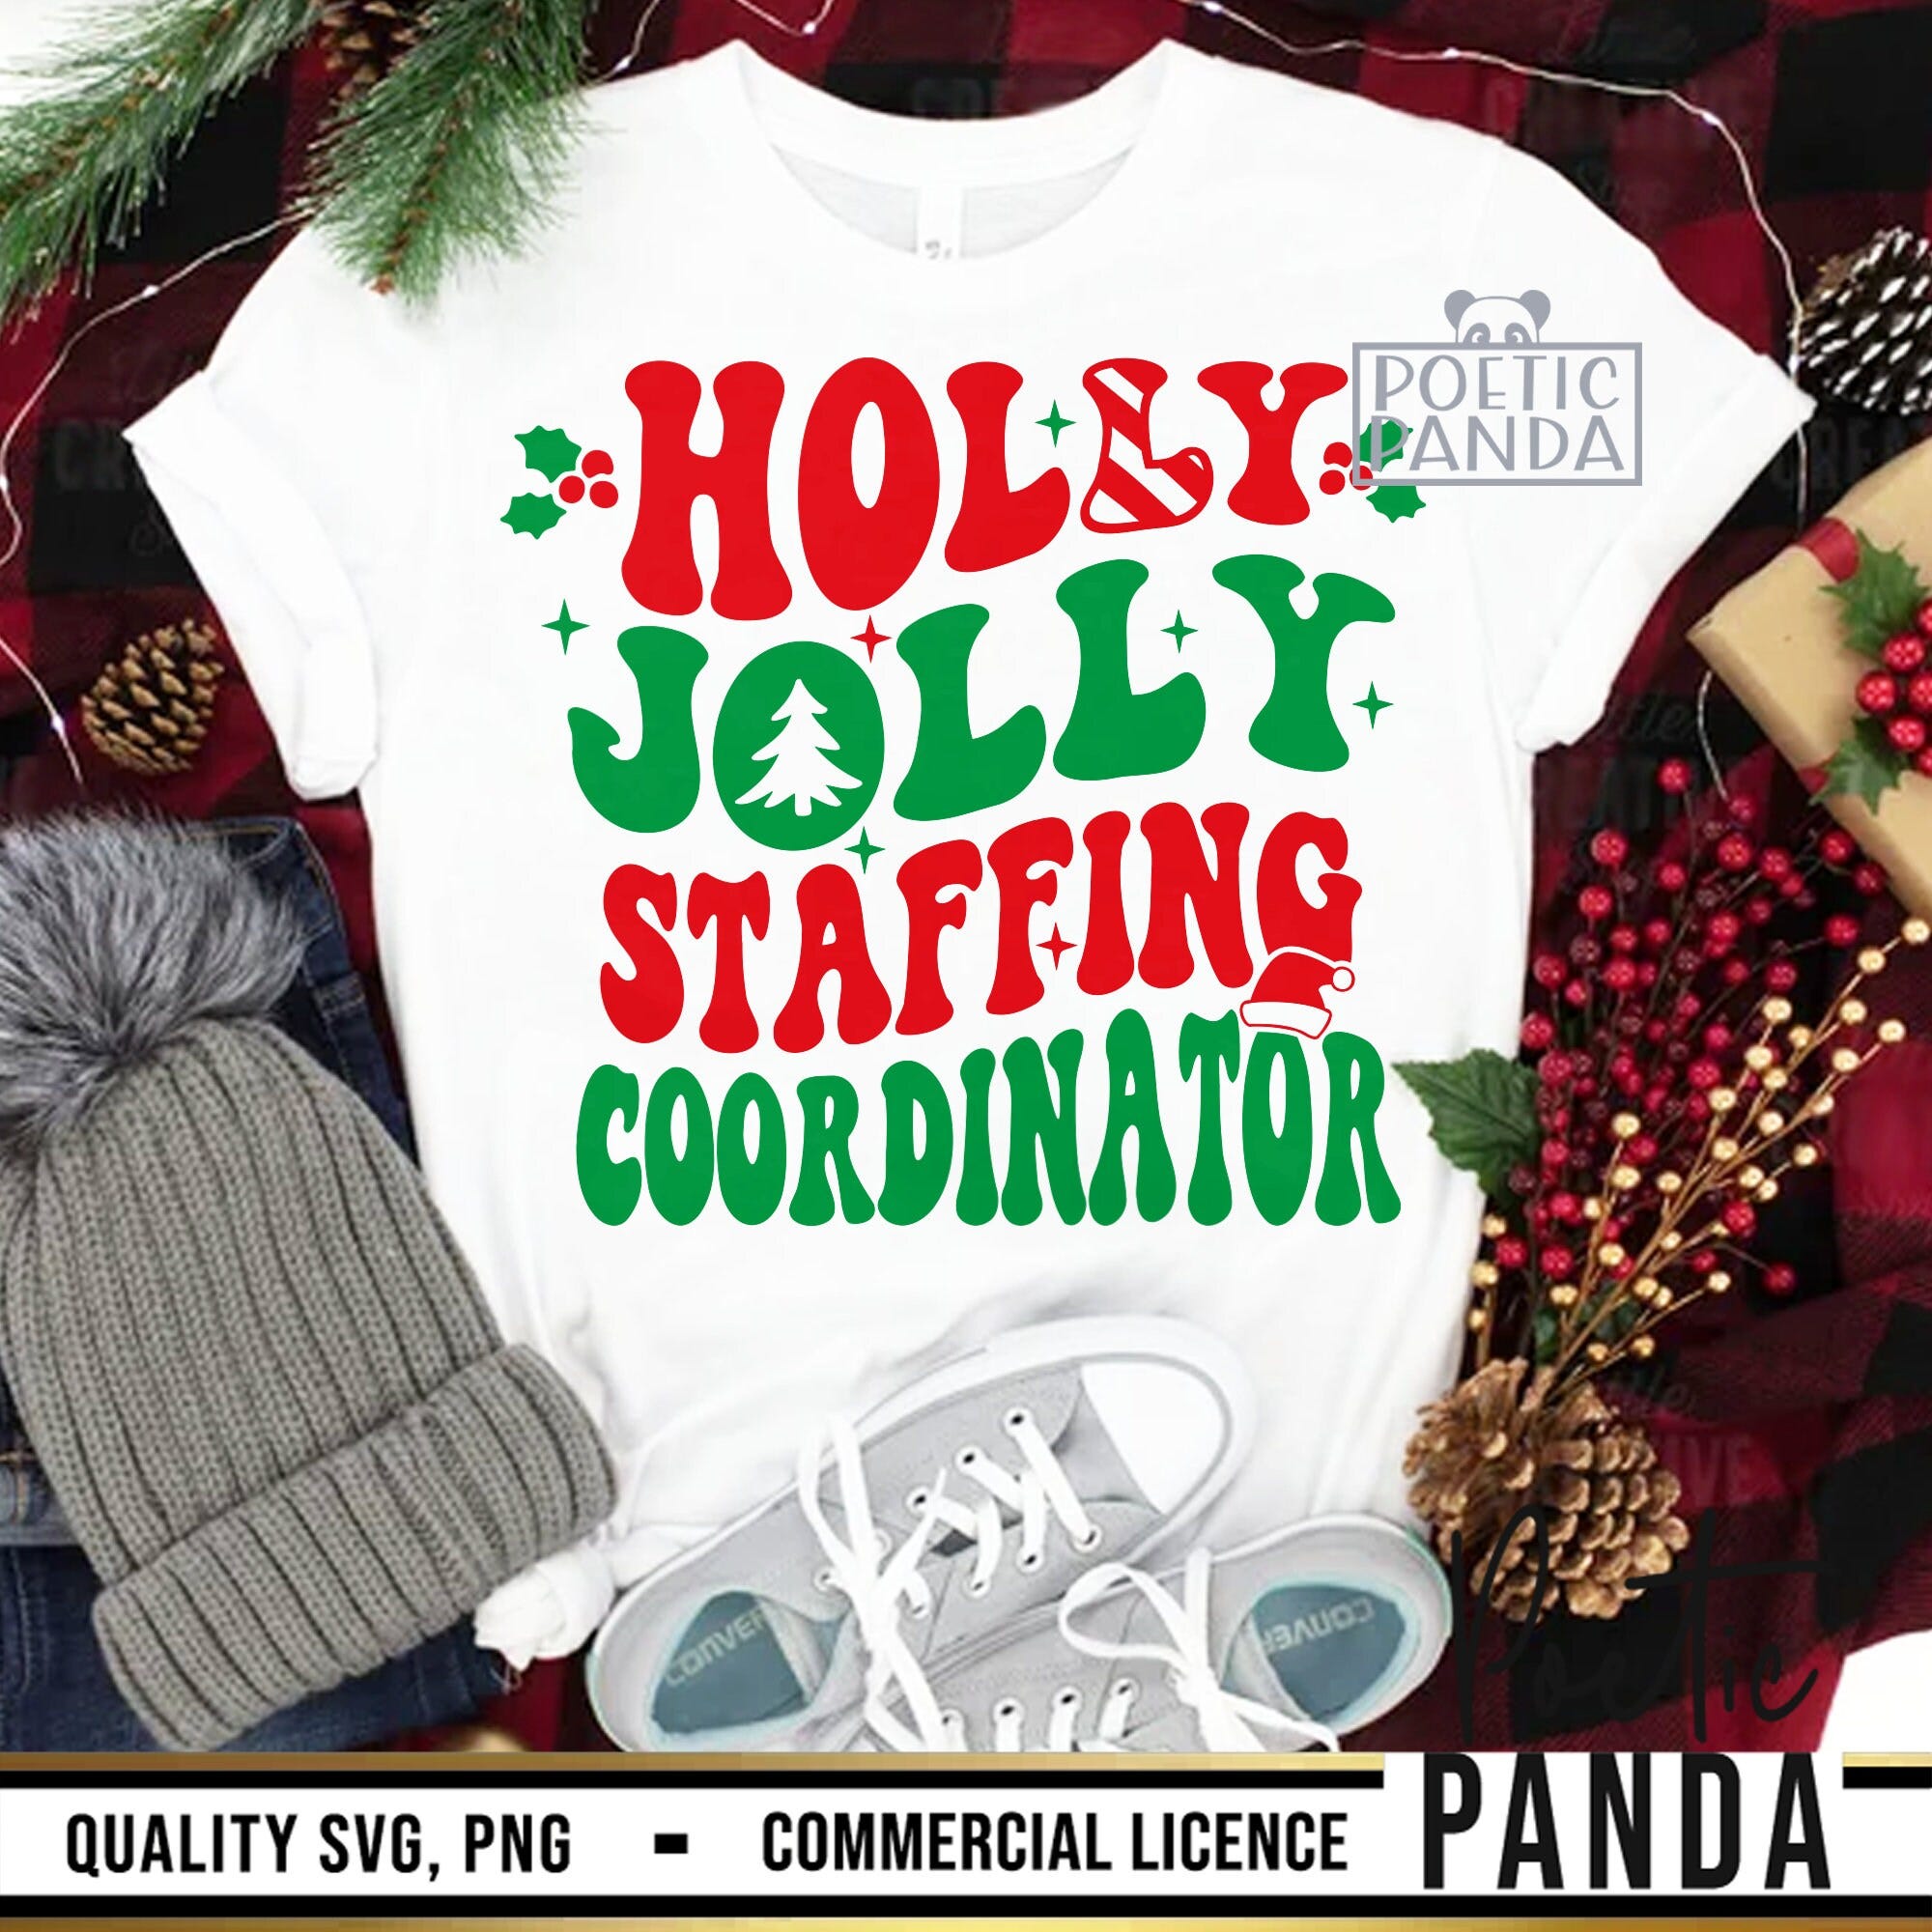 Holly Jolly Staffing Coordinator SVG PNG, Staffing Coordinator Xma Svg, HR Christmas Svg, Human Resources Svg, Teacher Shirt Svg